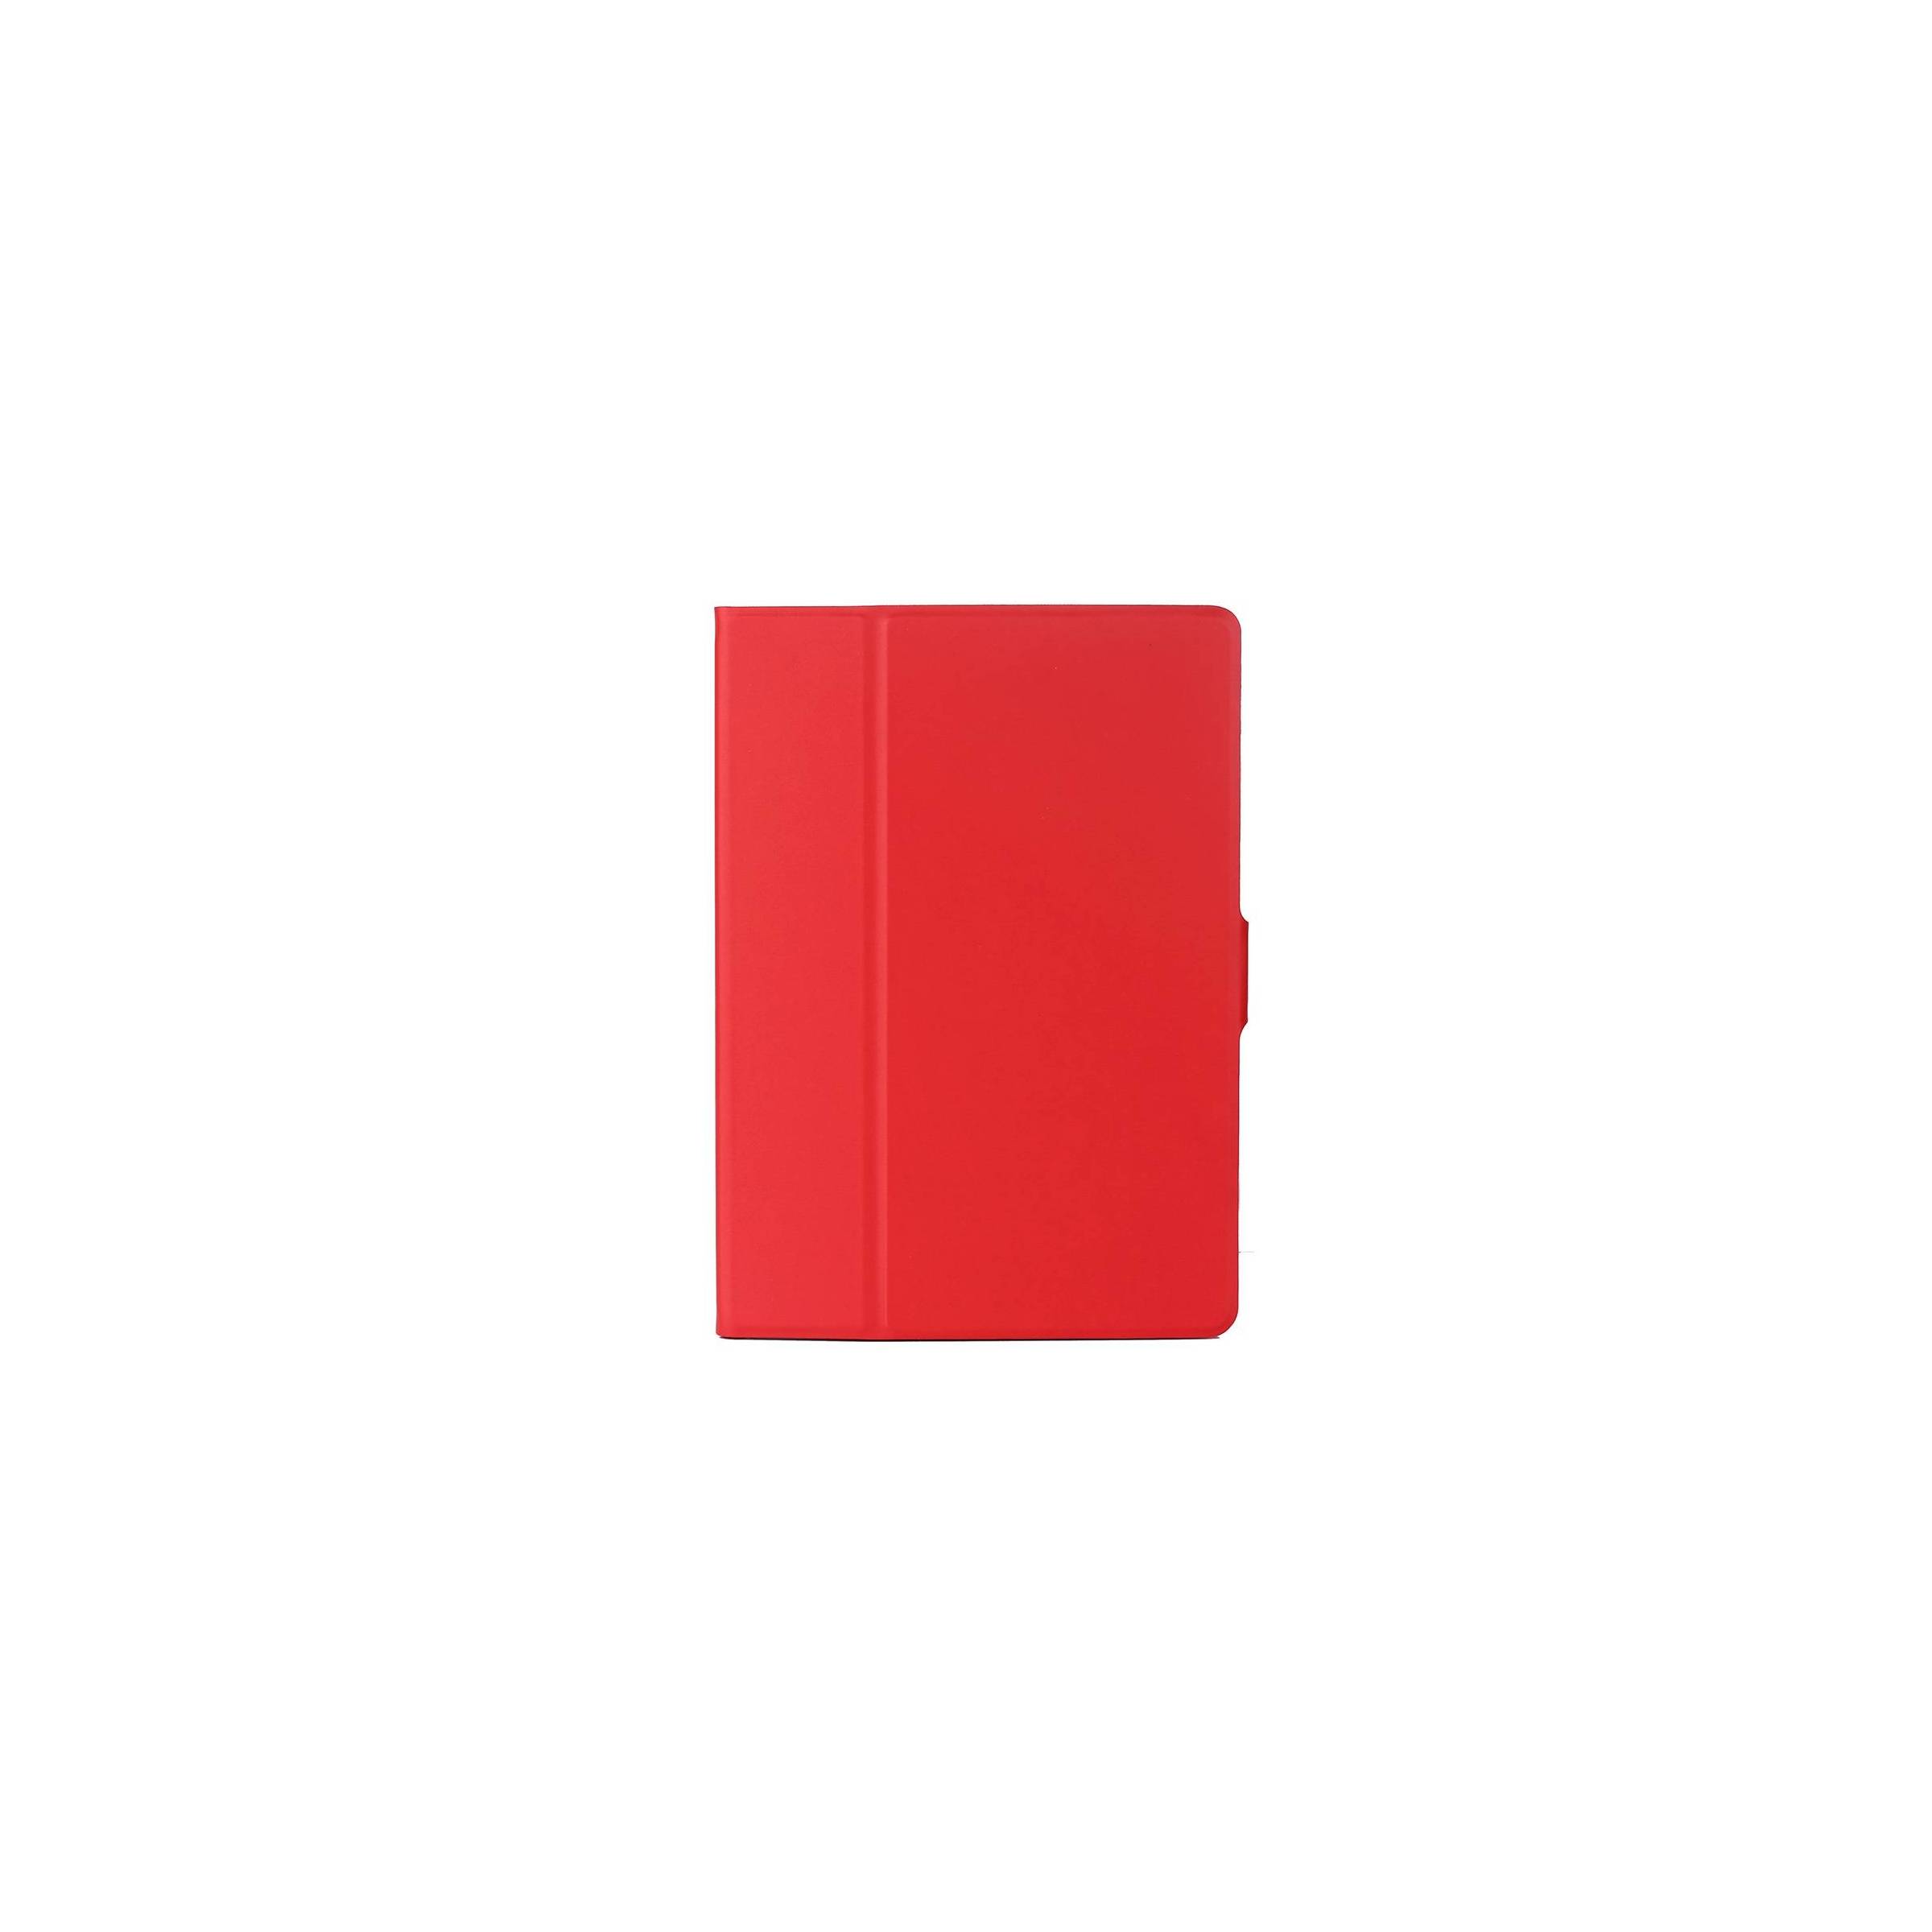 Bilde av Ipad 5 Smart Cover Med Bagside, Farge Rød